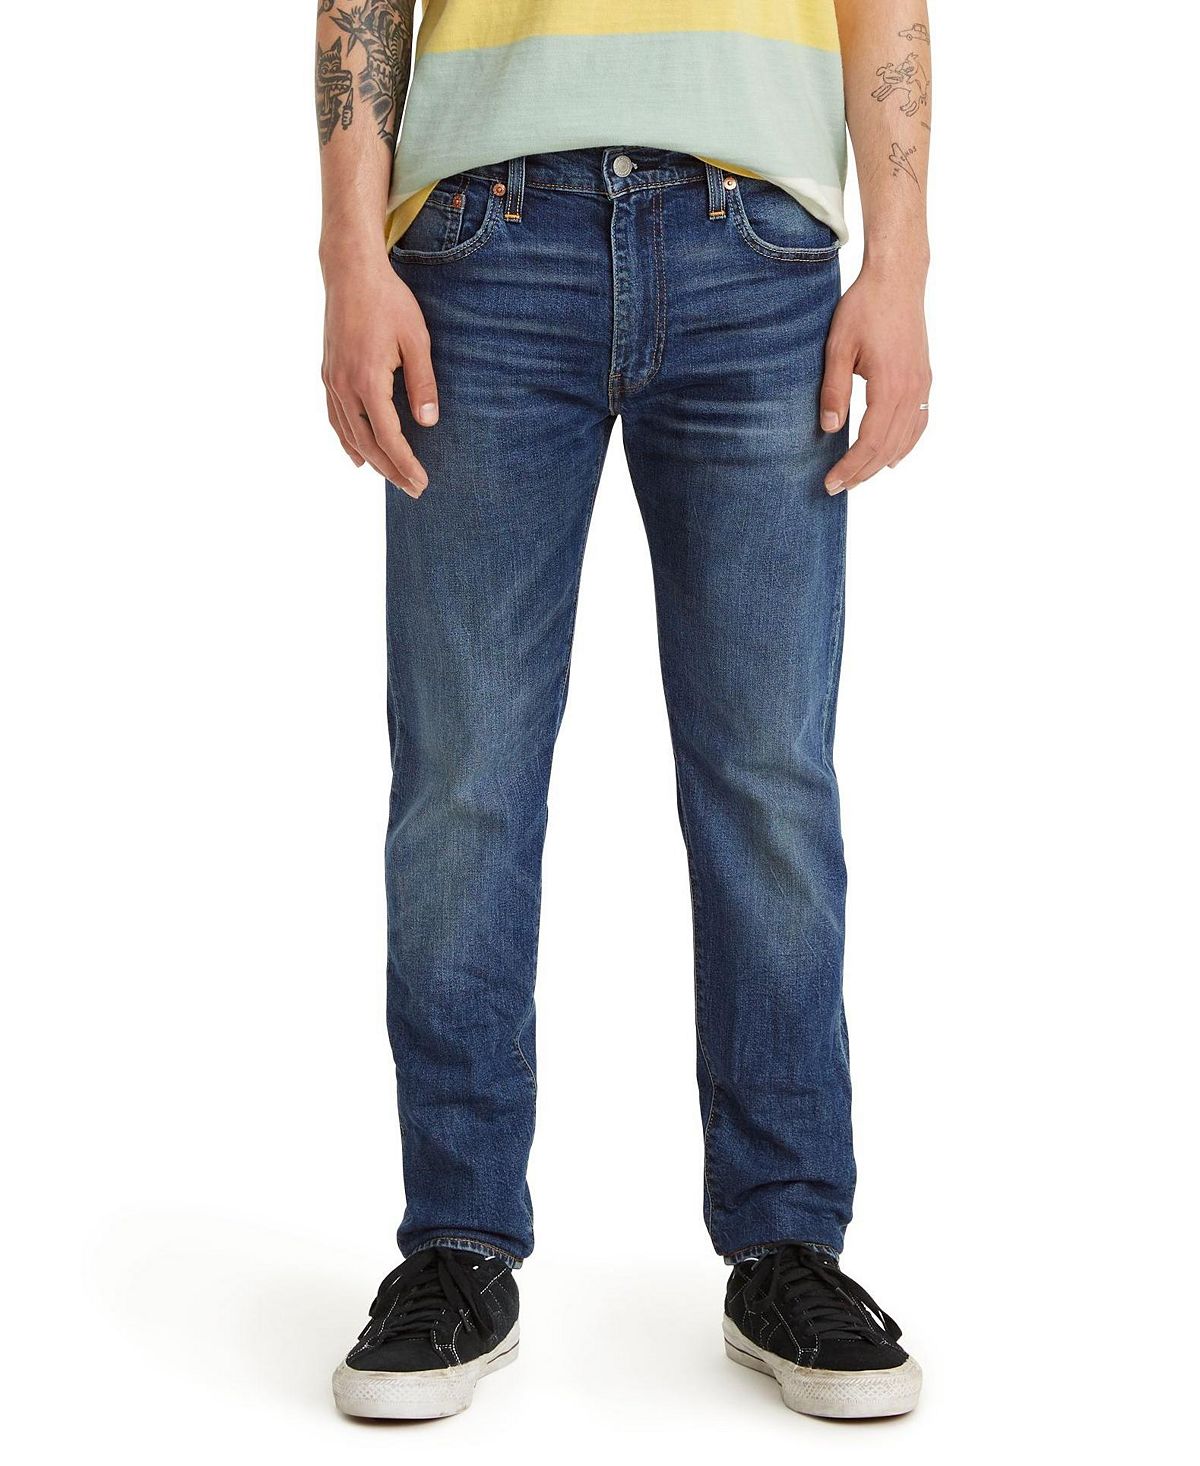 Мужские зауженные зауженные джинсы levi’s 512 flex Levi's, мульти джинсы sinsay узкие 40 размер